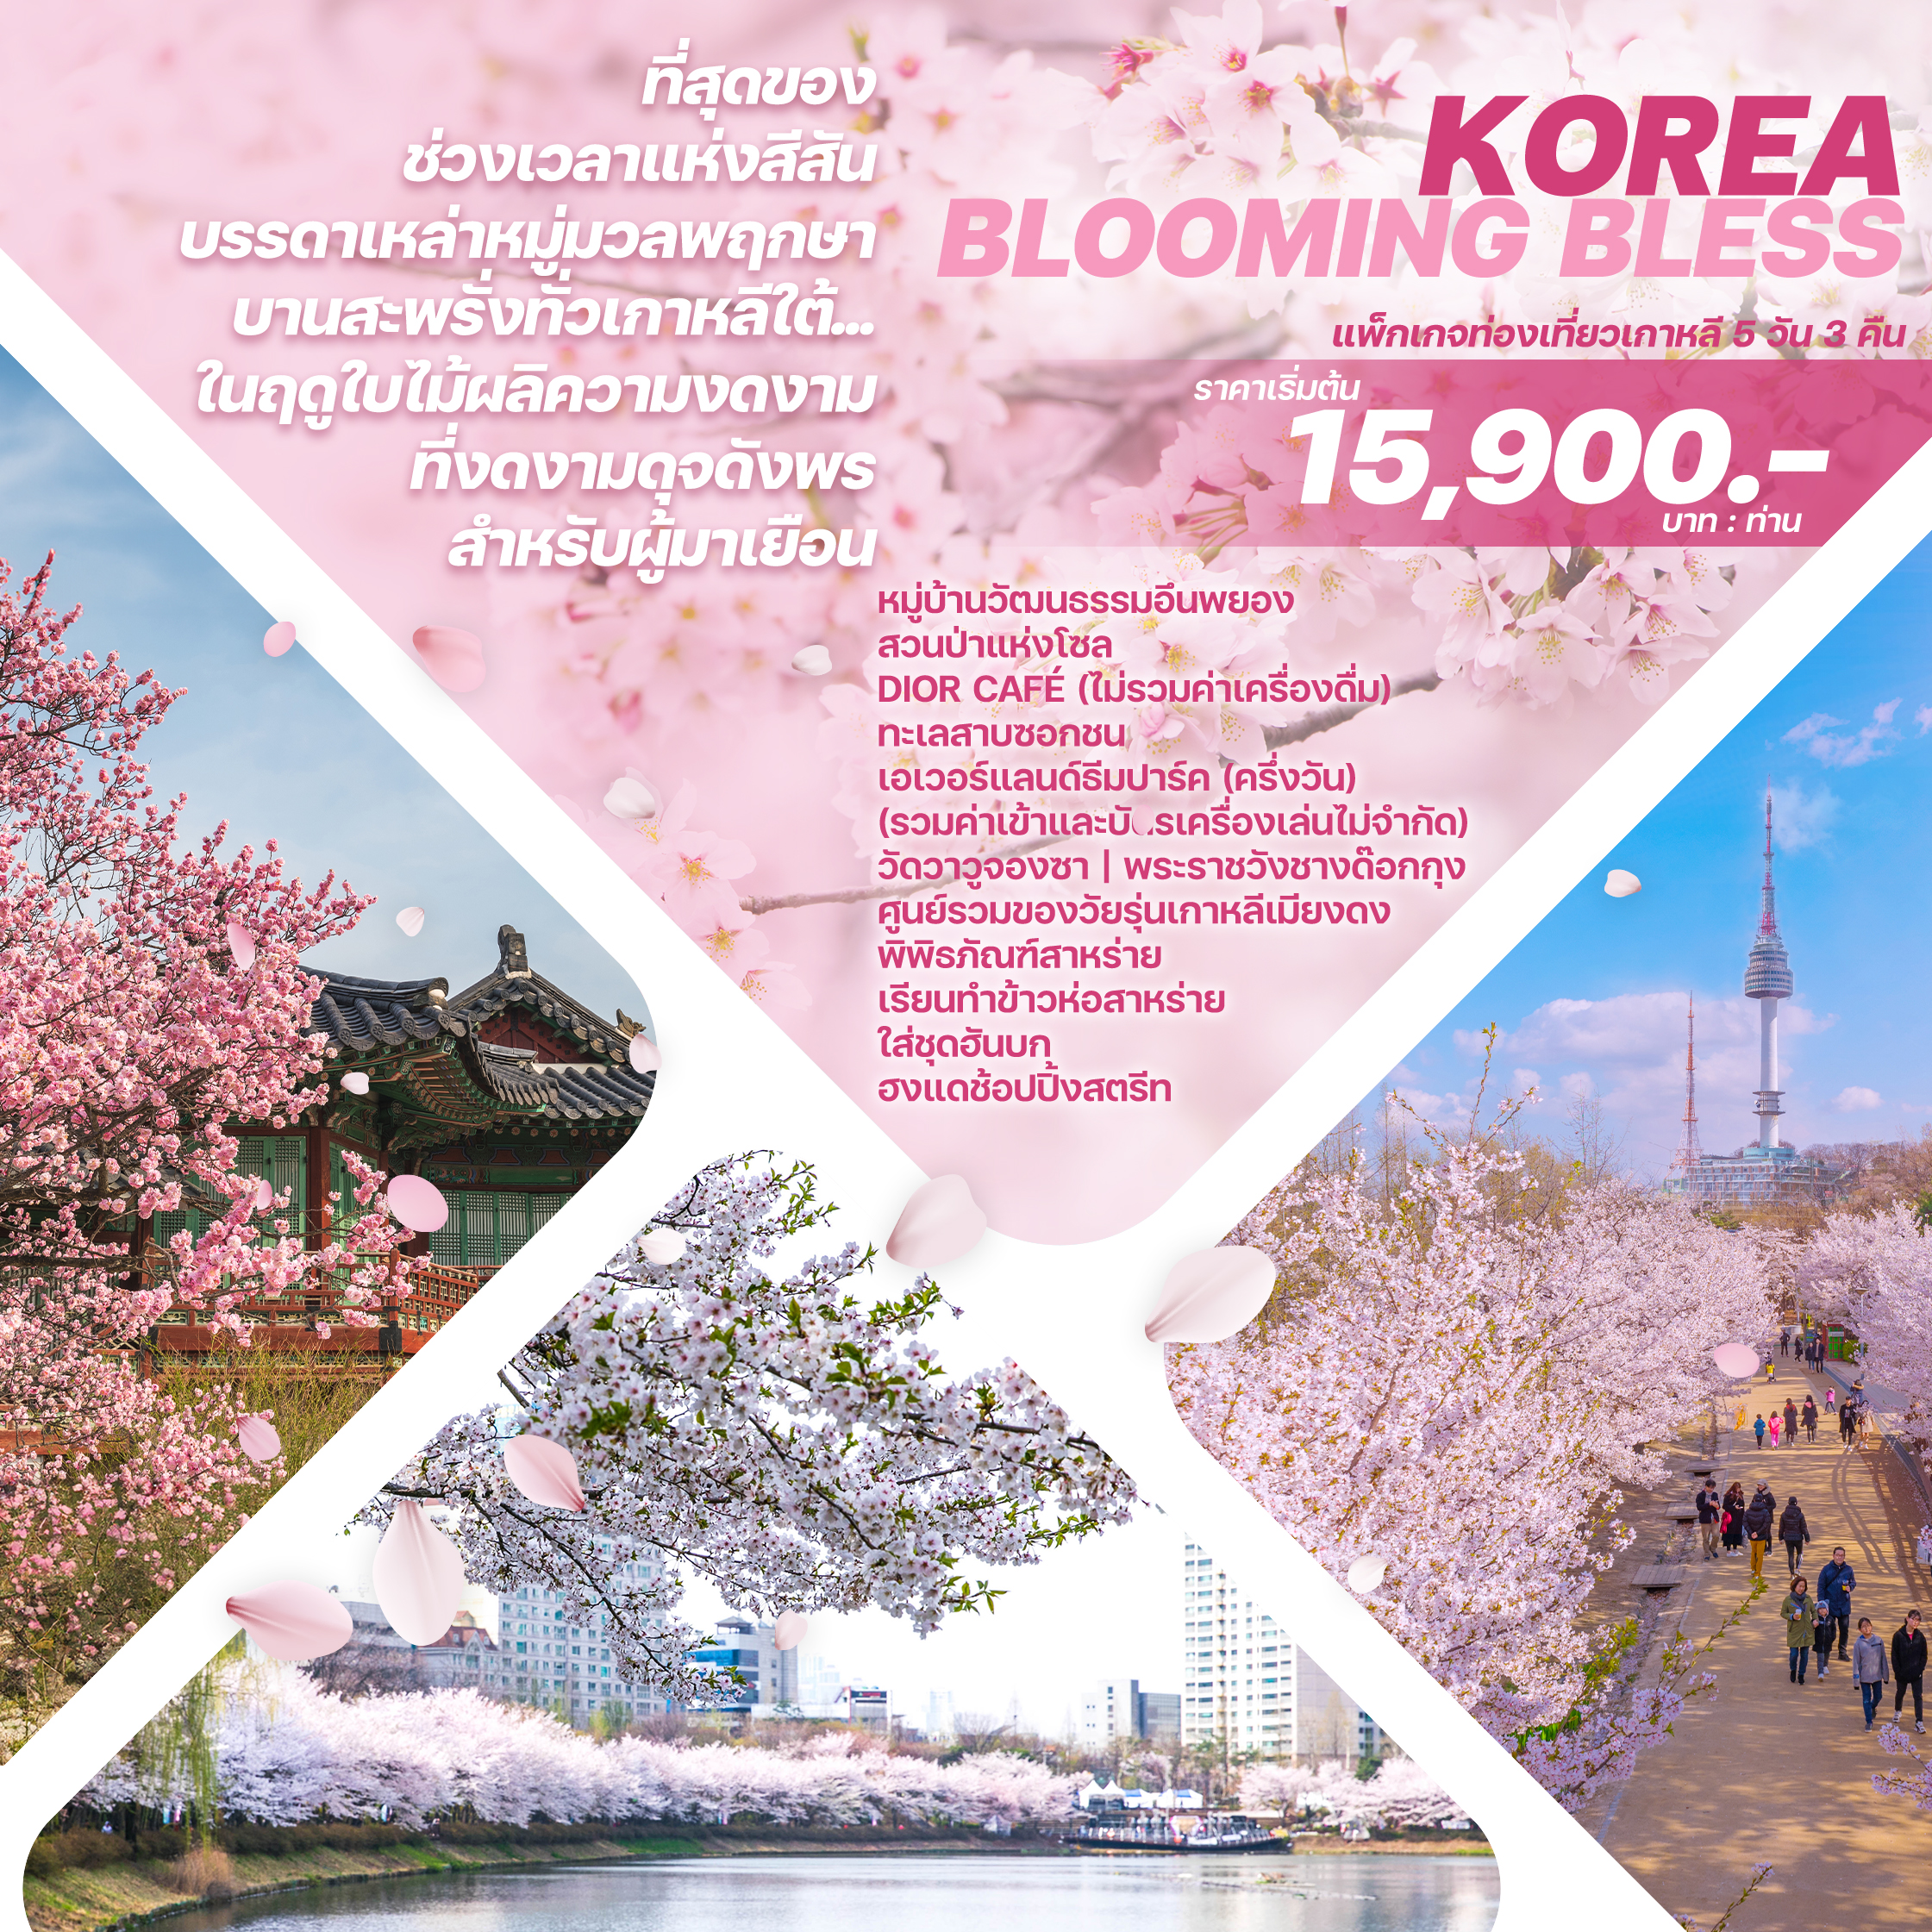 ทัวร์เกาหลี KOREA BLOOMING BLESS